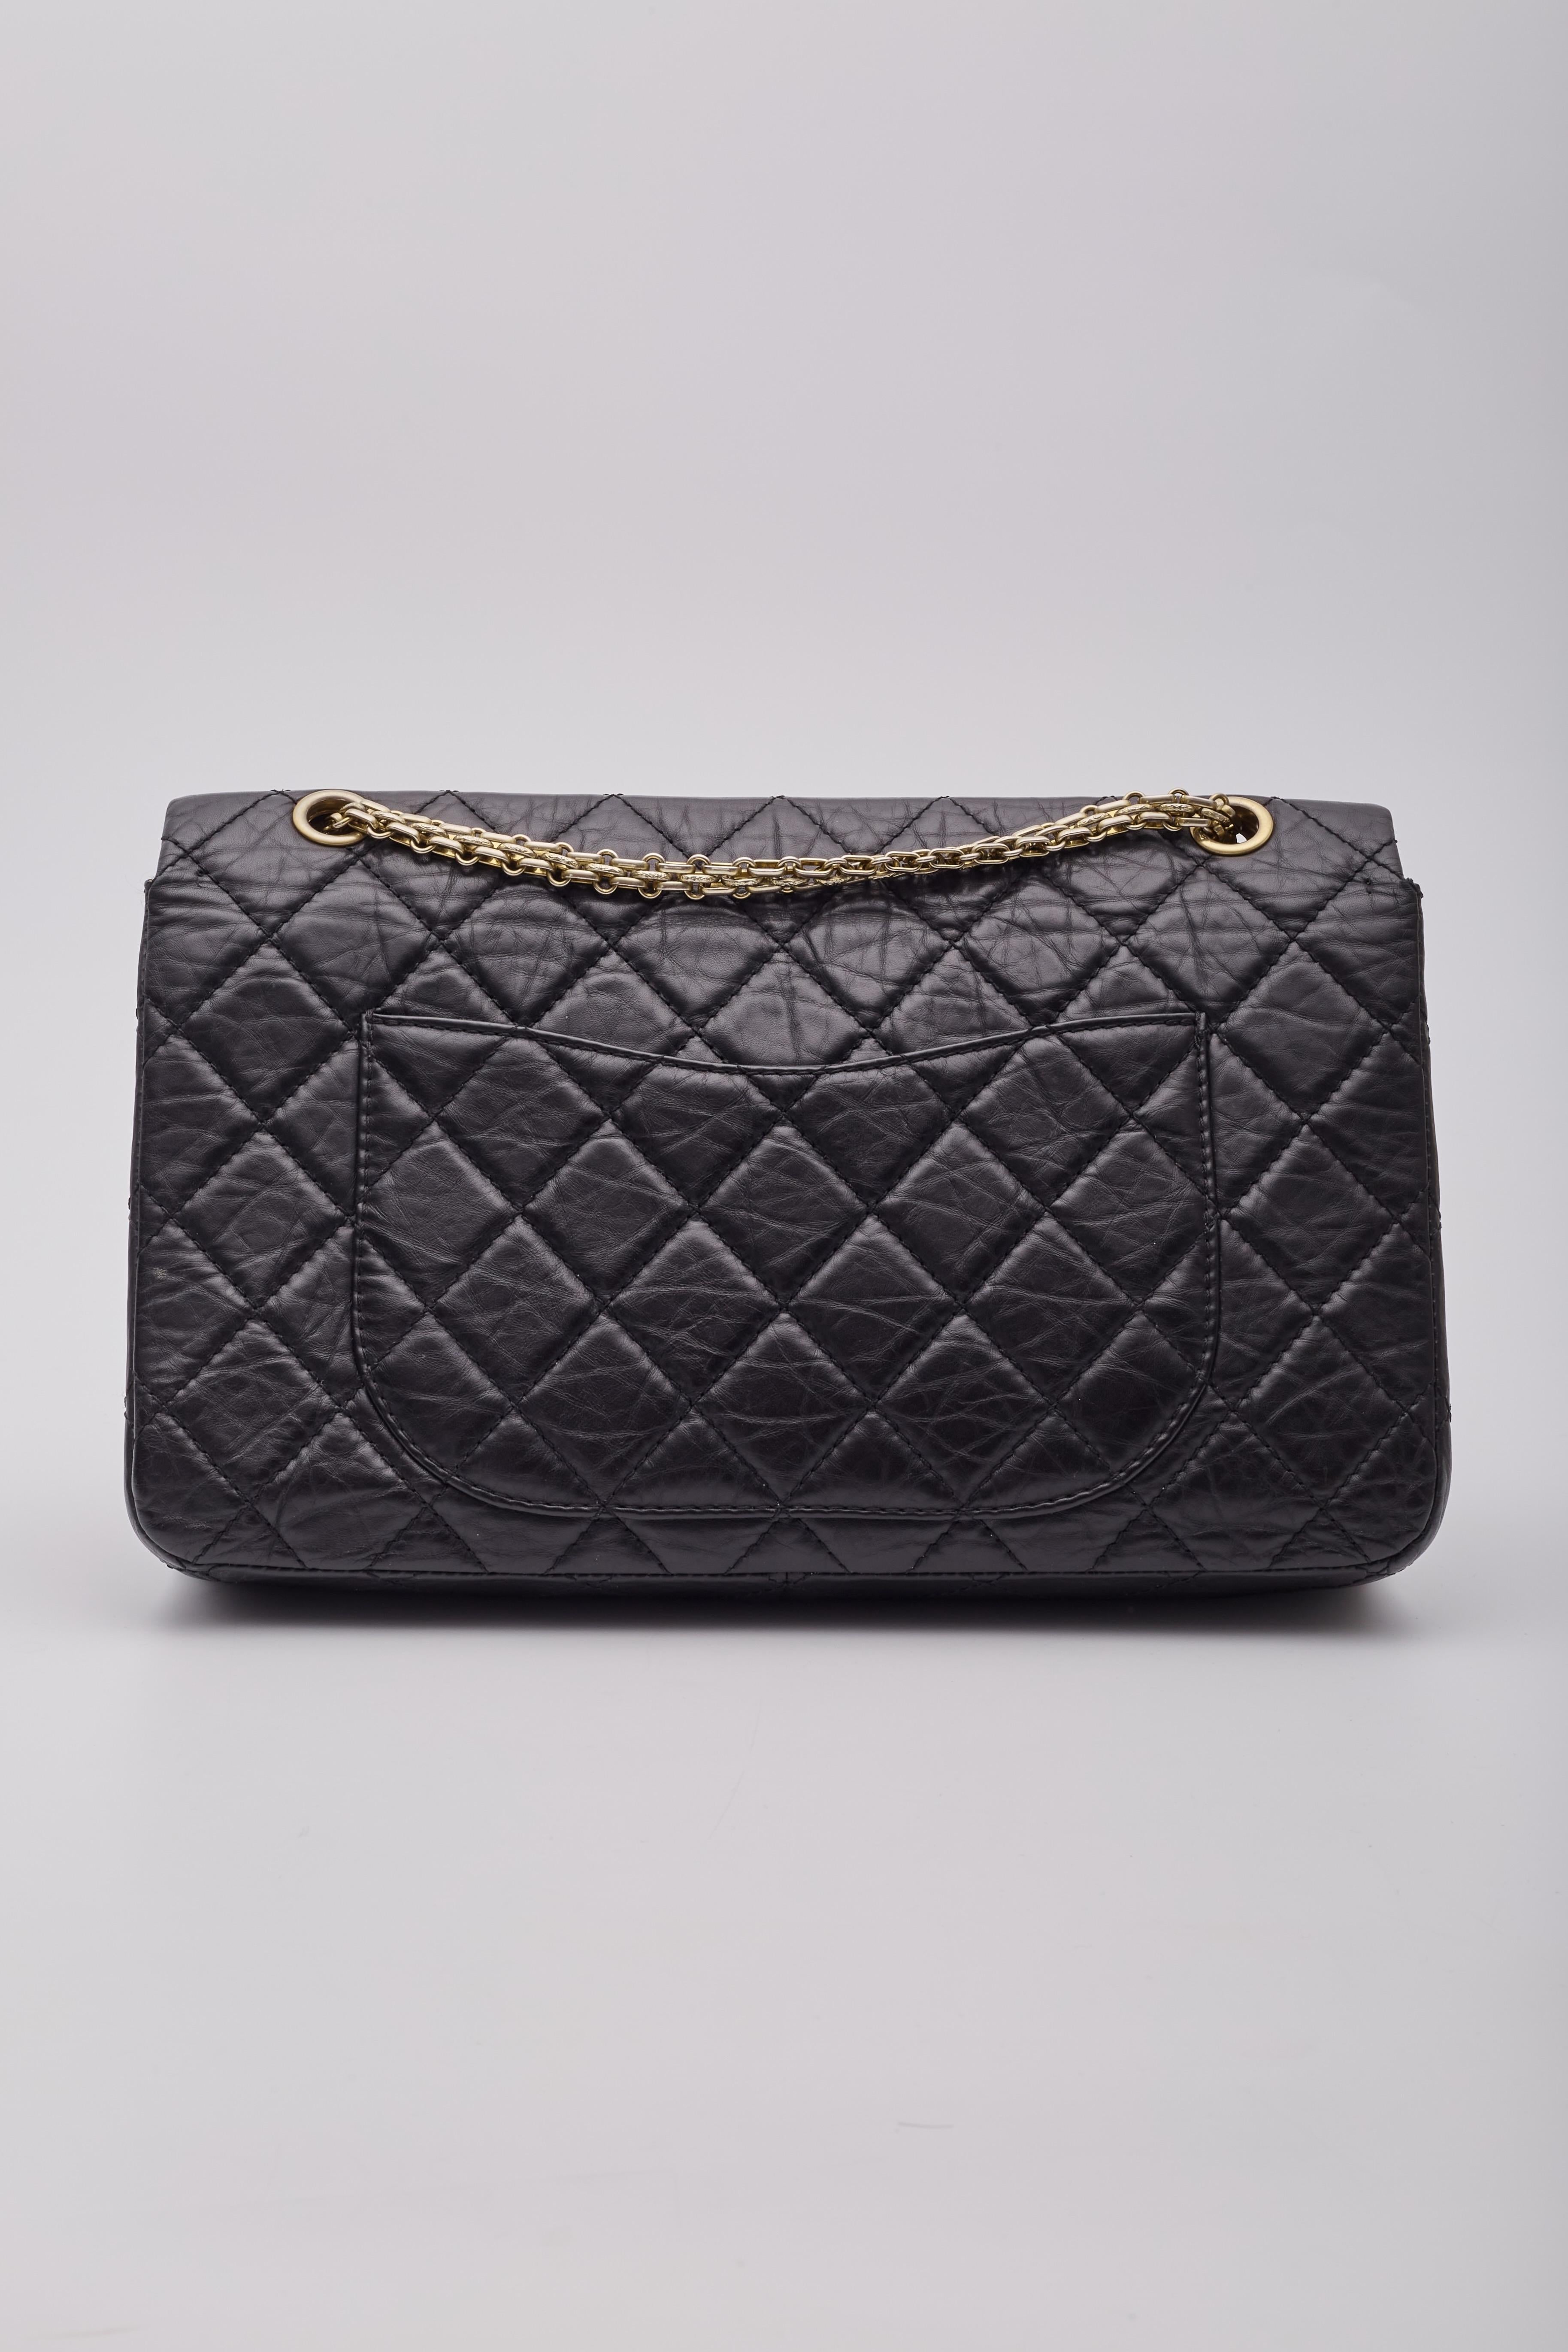 Women's Chanel Calfskin Black Reissue 2.55 227 Flap Bag For Sale